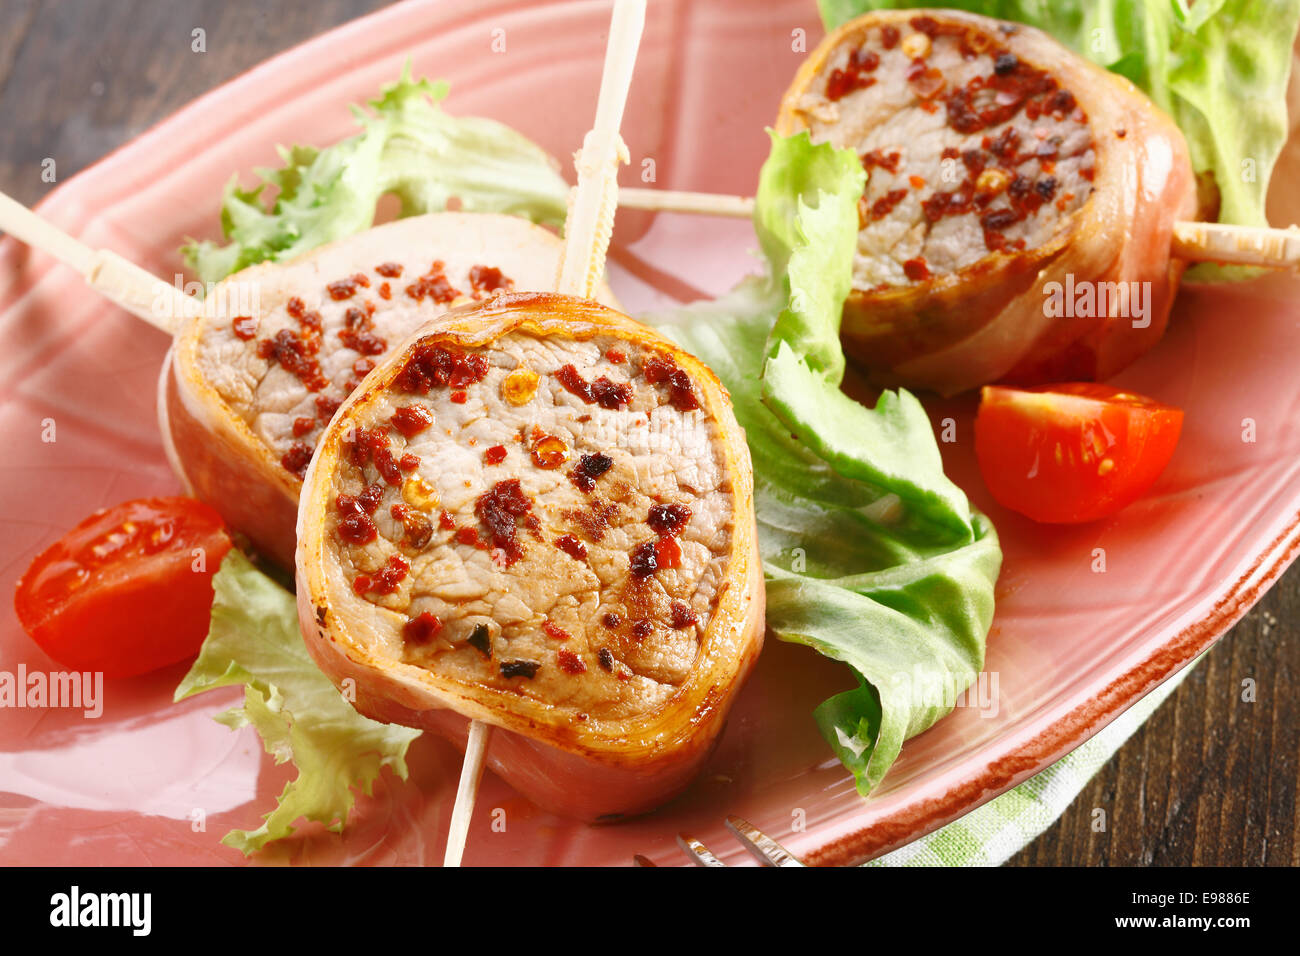 Rotes Fleisch Nahaufnahme. Nahaufnahme von einem leckeren Schweinefleisch Menü mit Salat und Tomate. Für die deutschen Food-Konzepte Stockfoto